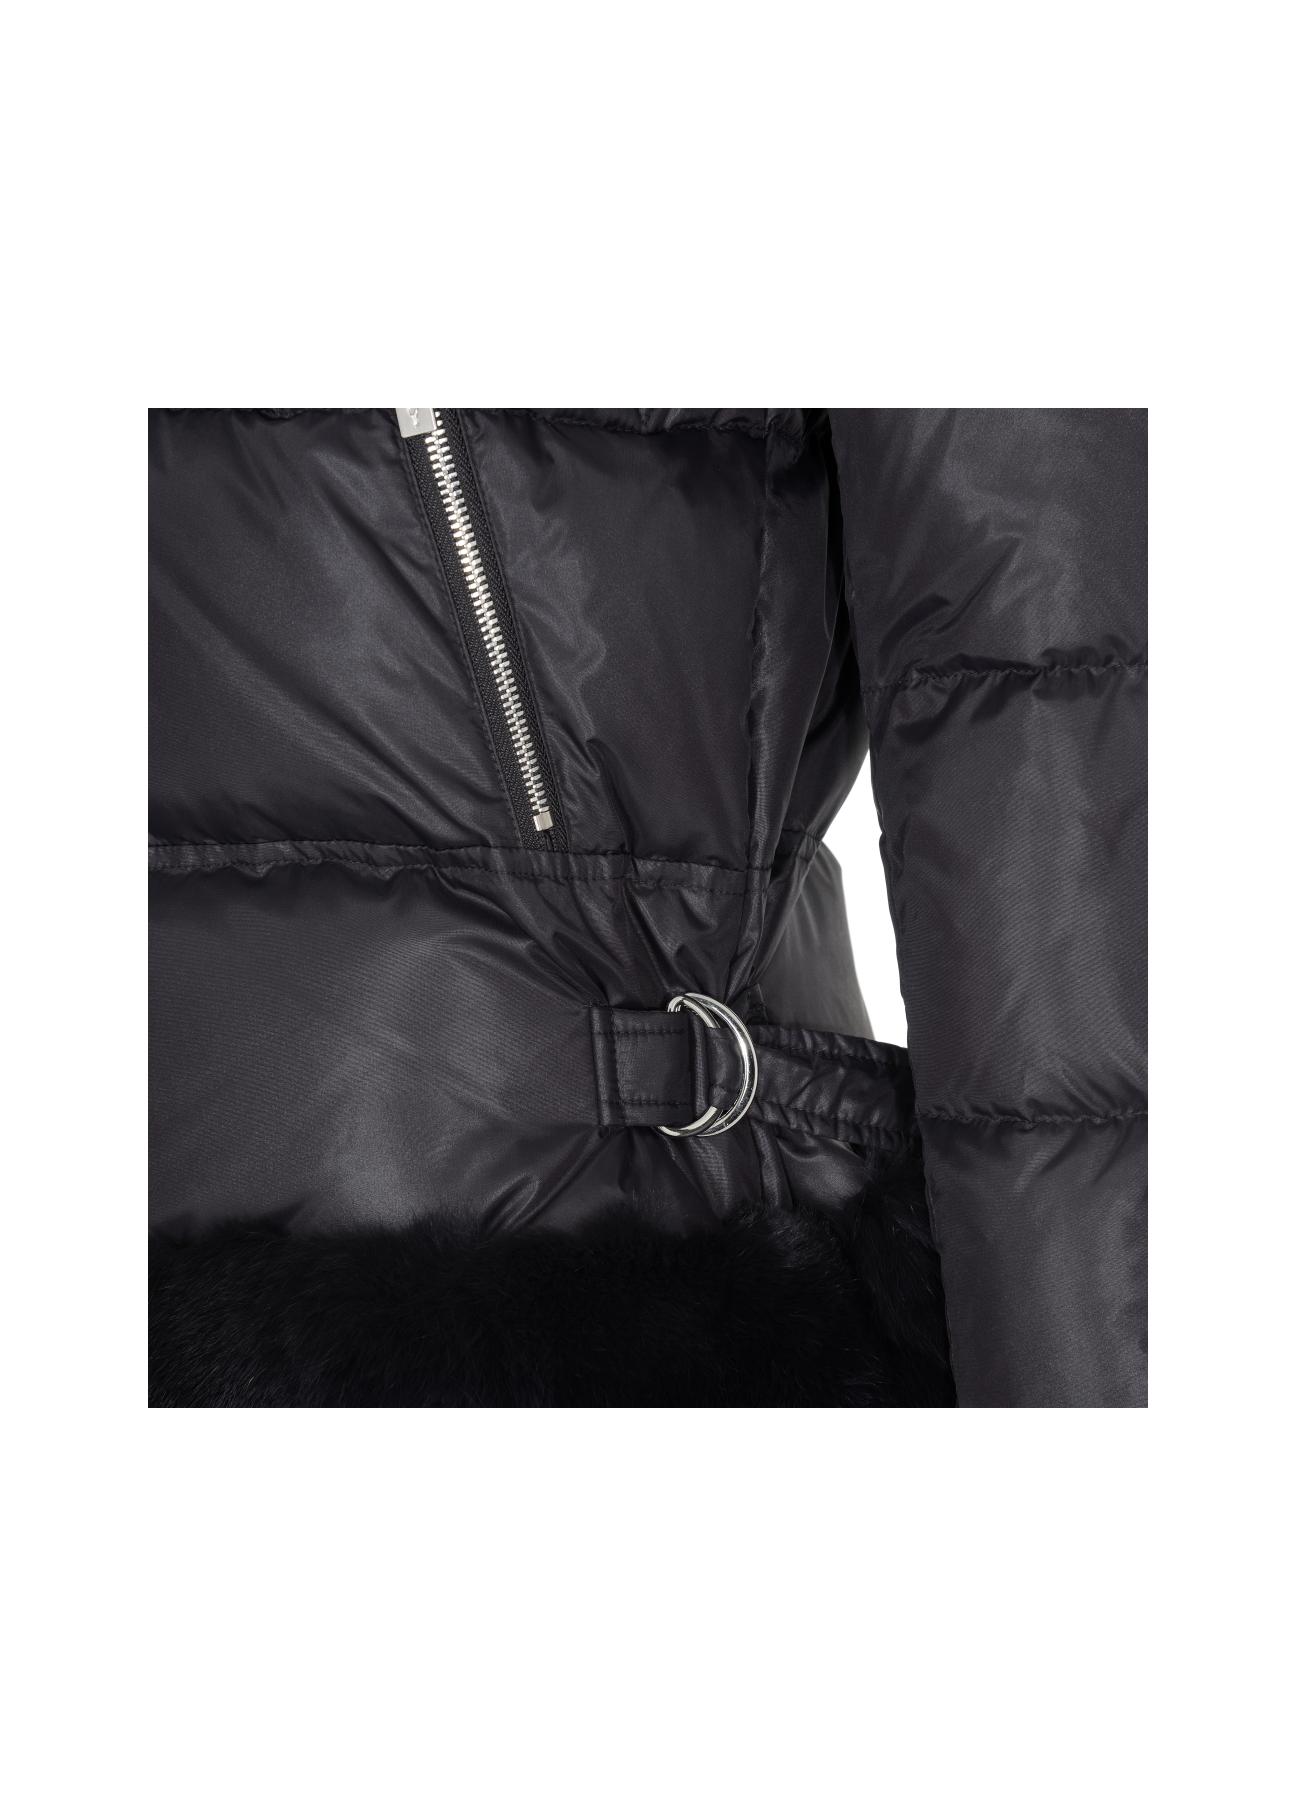 Puchowa kurtka damska na zimę KURDT-0336-99(Z21)